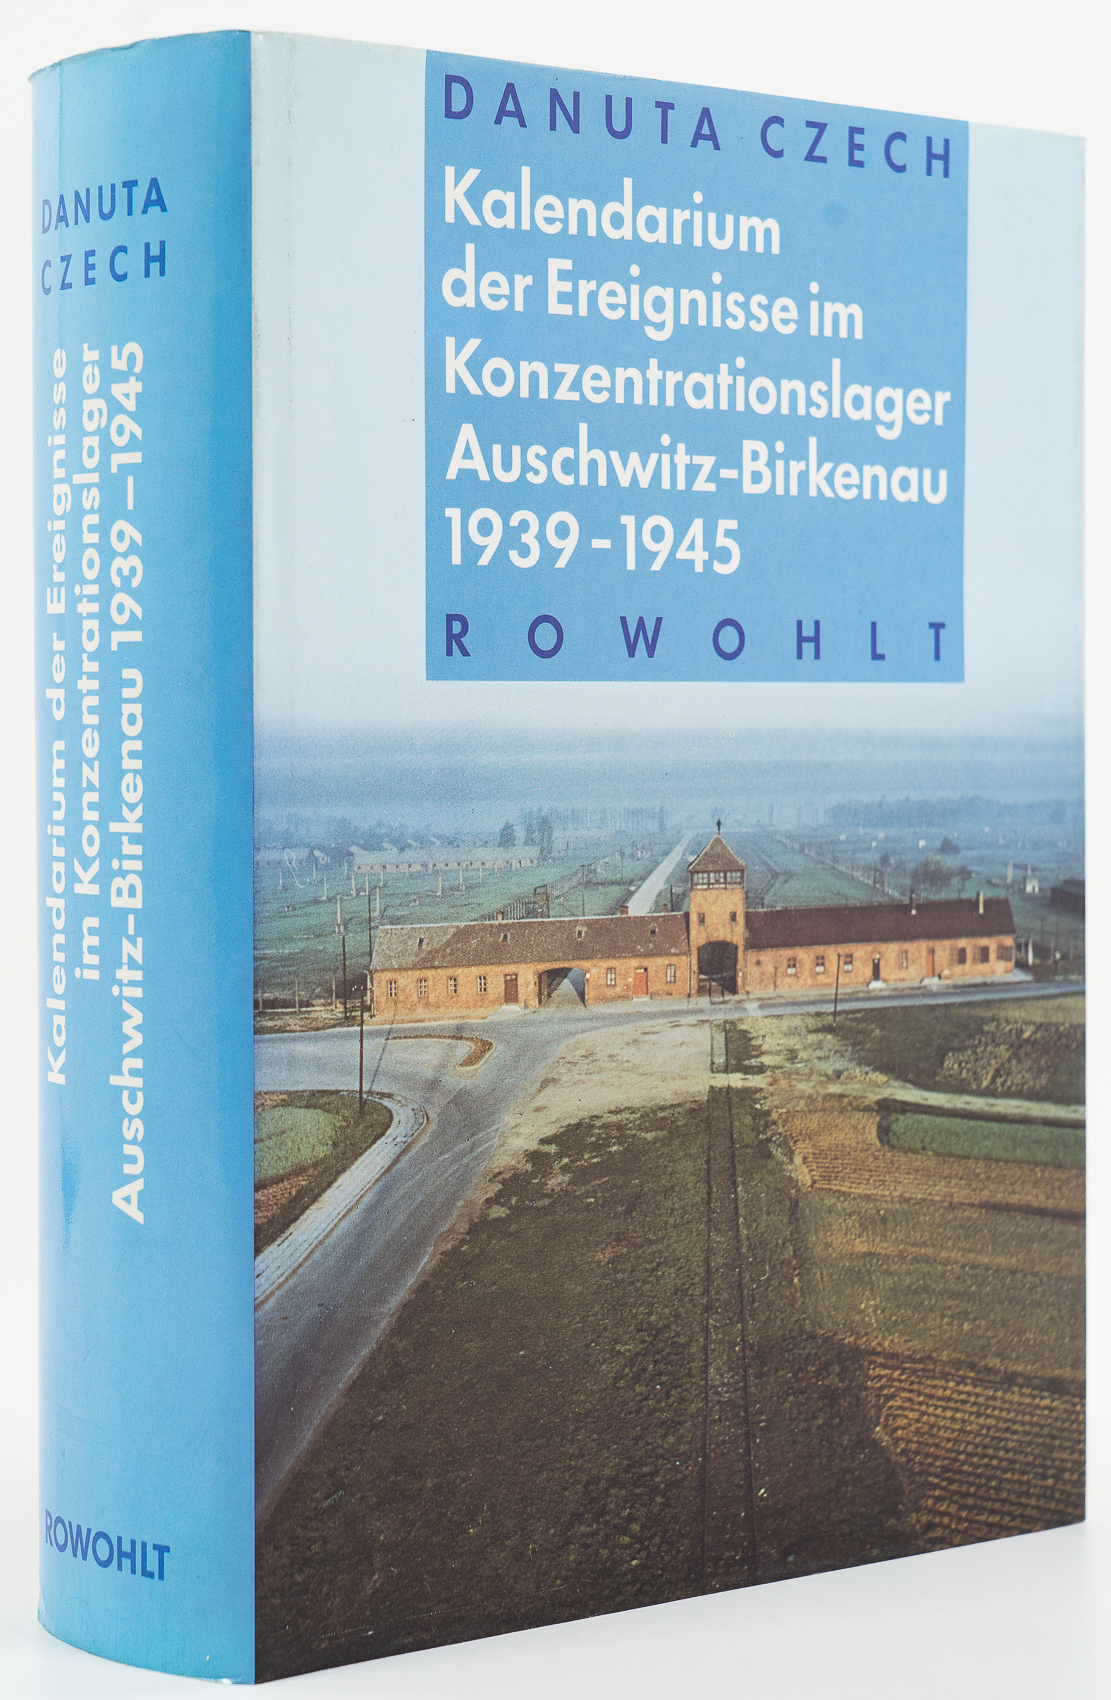 Kalendarium der Ereignisse im Konzentrationslager Auschwitz-Birkenau 1939-1945. - - Czech, Danuta